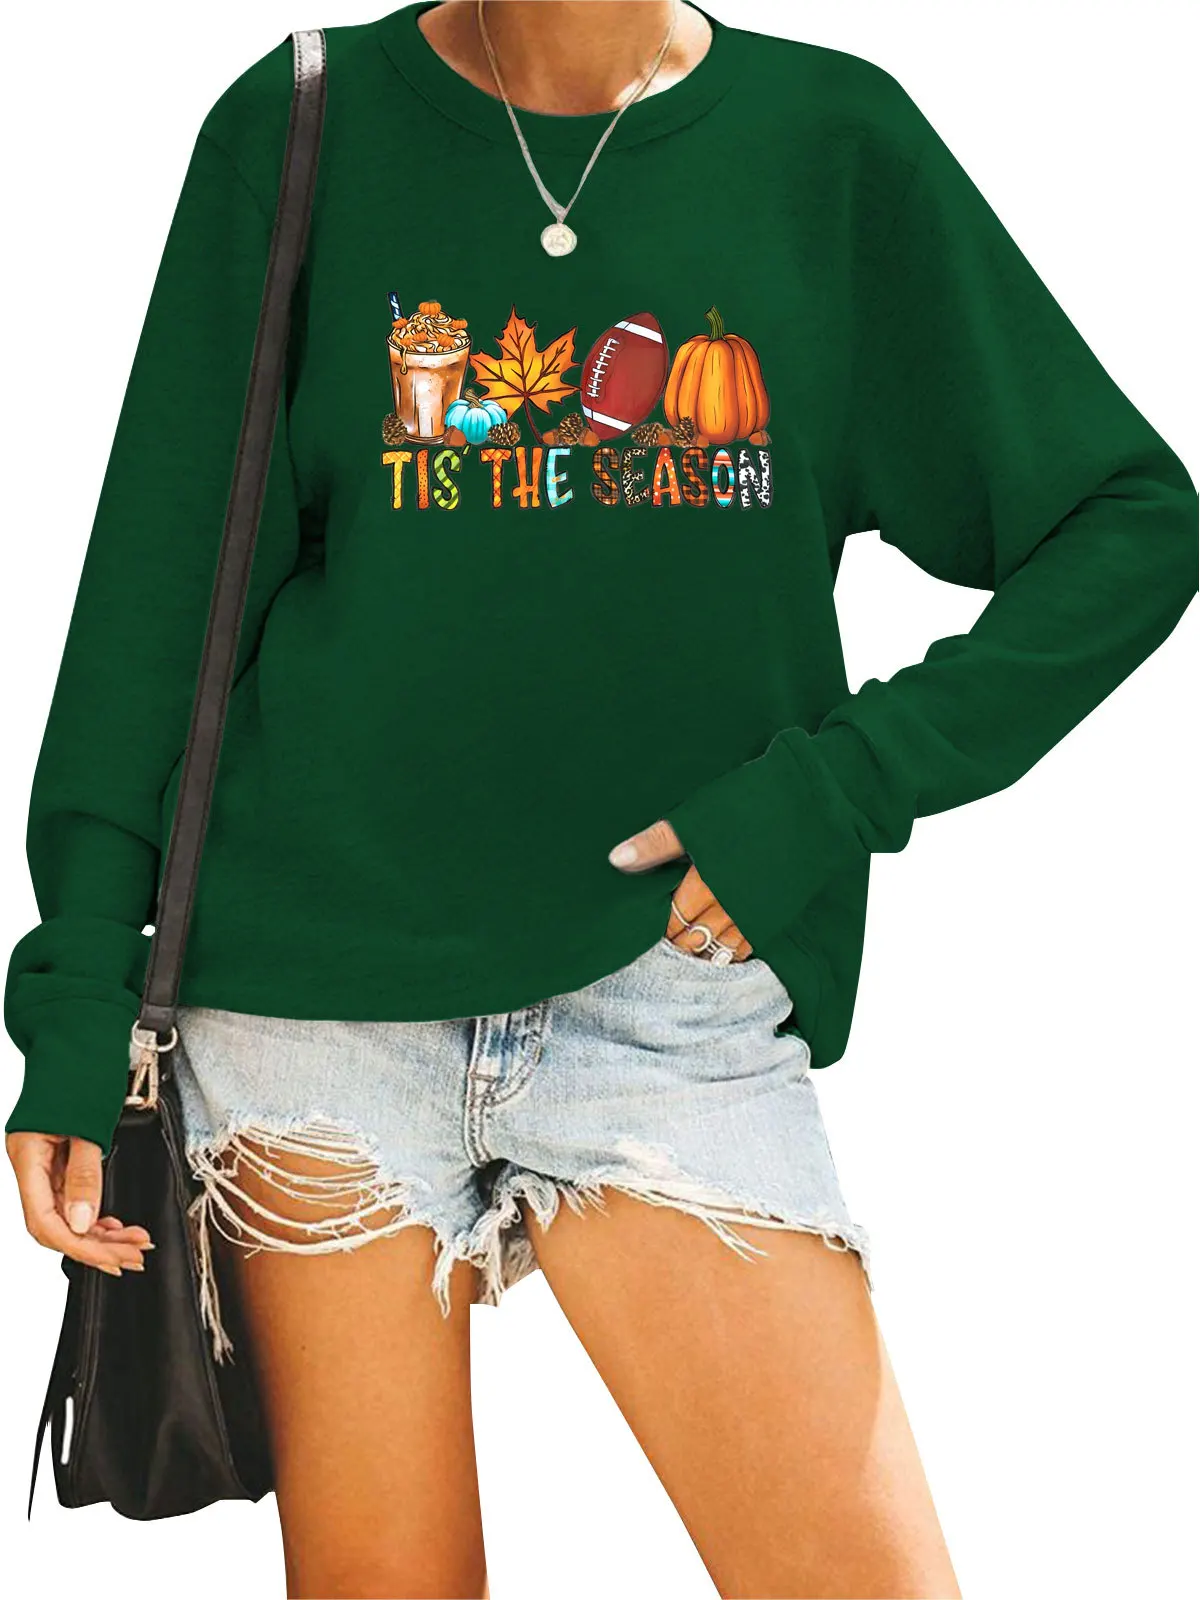 

New TIS THE SEASON Fun Printed Hoodies Casual Tops Women Sweatshirt Aesthetic Oversized Hoodie Streetwear Women Sudadera